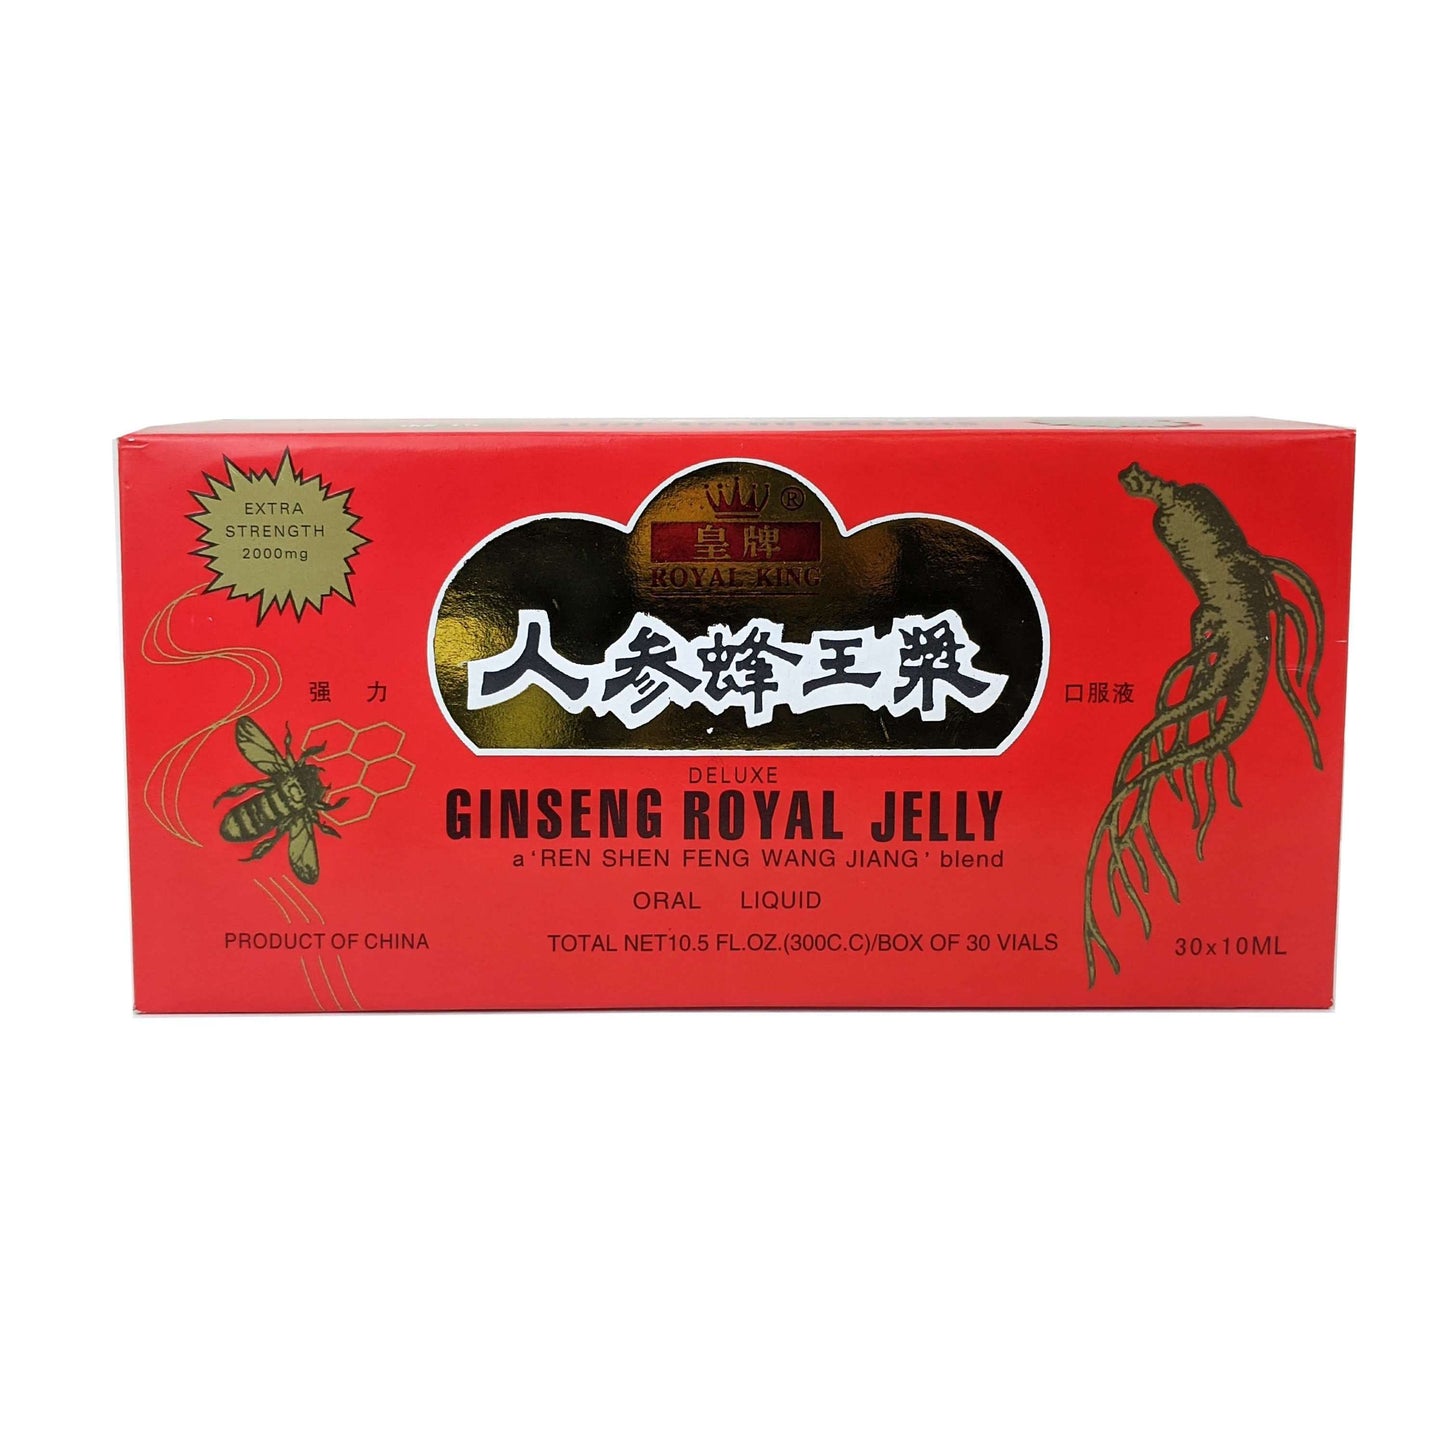 Royal King Ginseng Royal Jelly Extract Drink, Box of 30 Vials